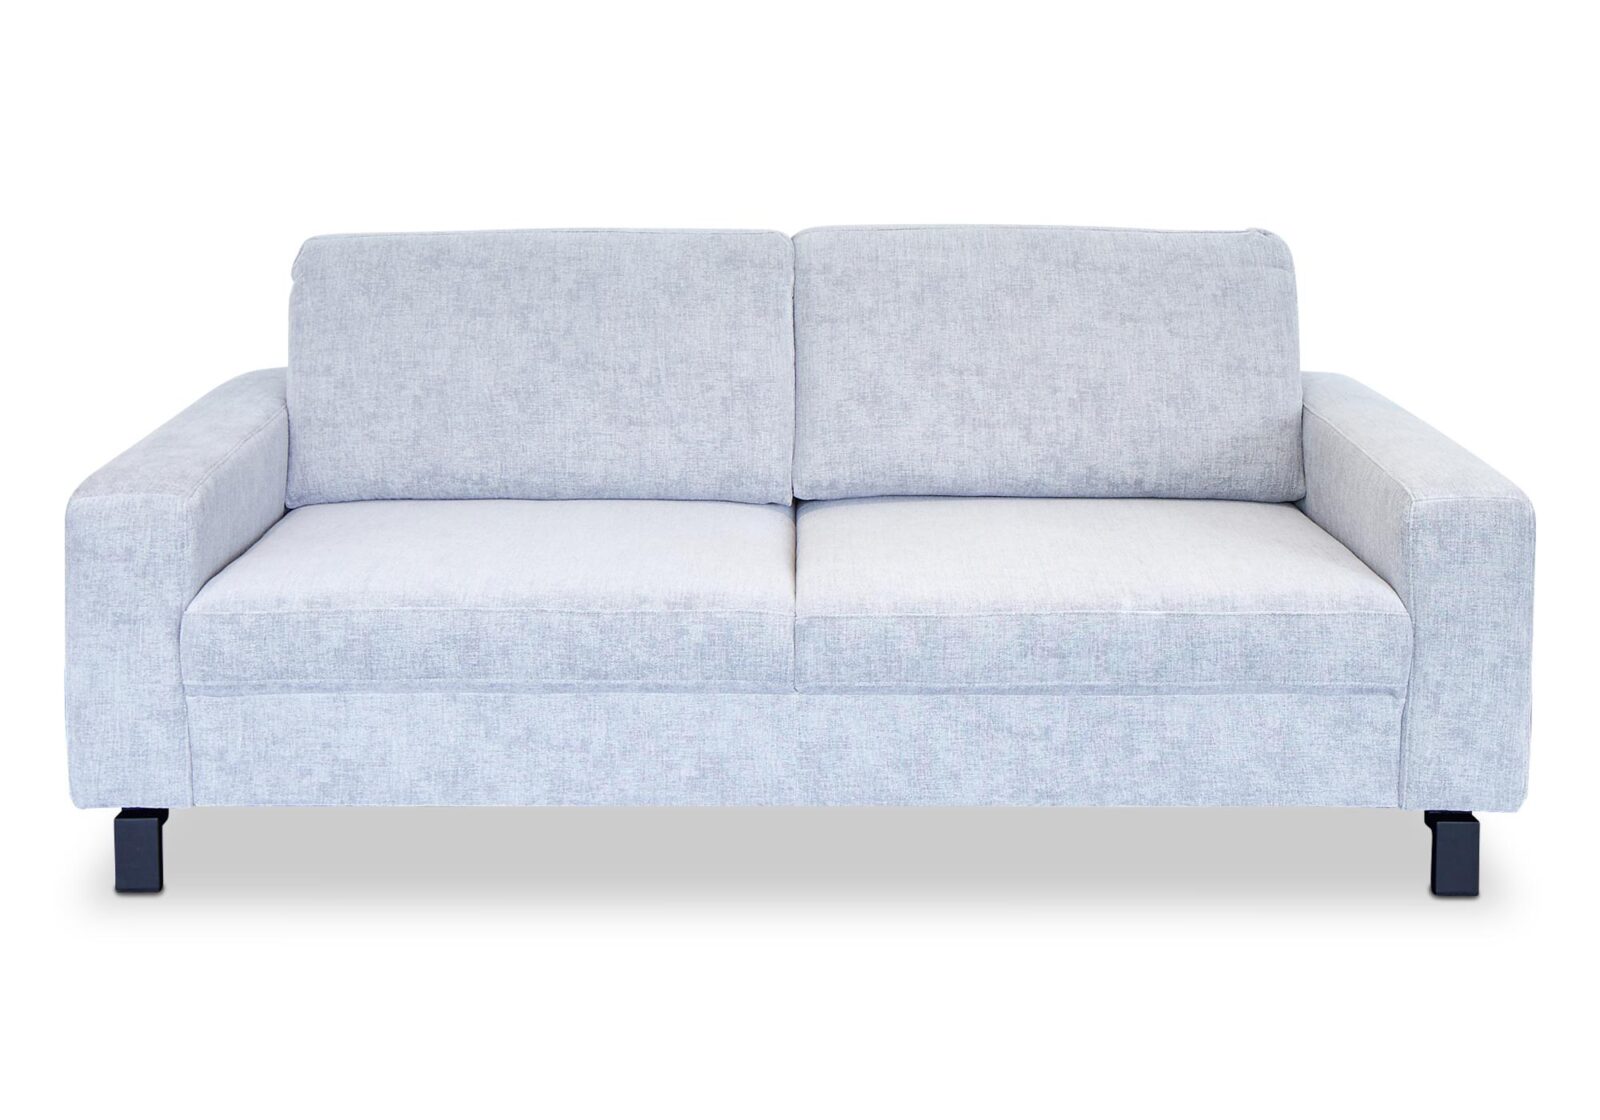 2.5er Sofa Molly mit Sitztiefenverstellung. Bezug: Stoff. Farbe: Hellgrau. Erhältlich bei Möbel Gallati.